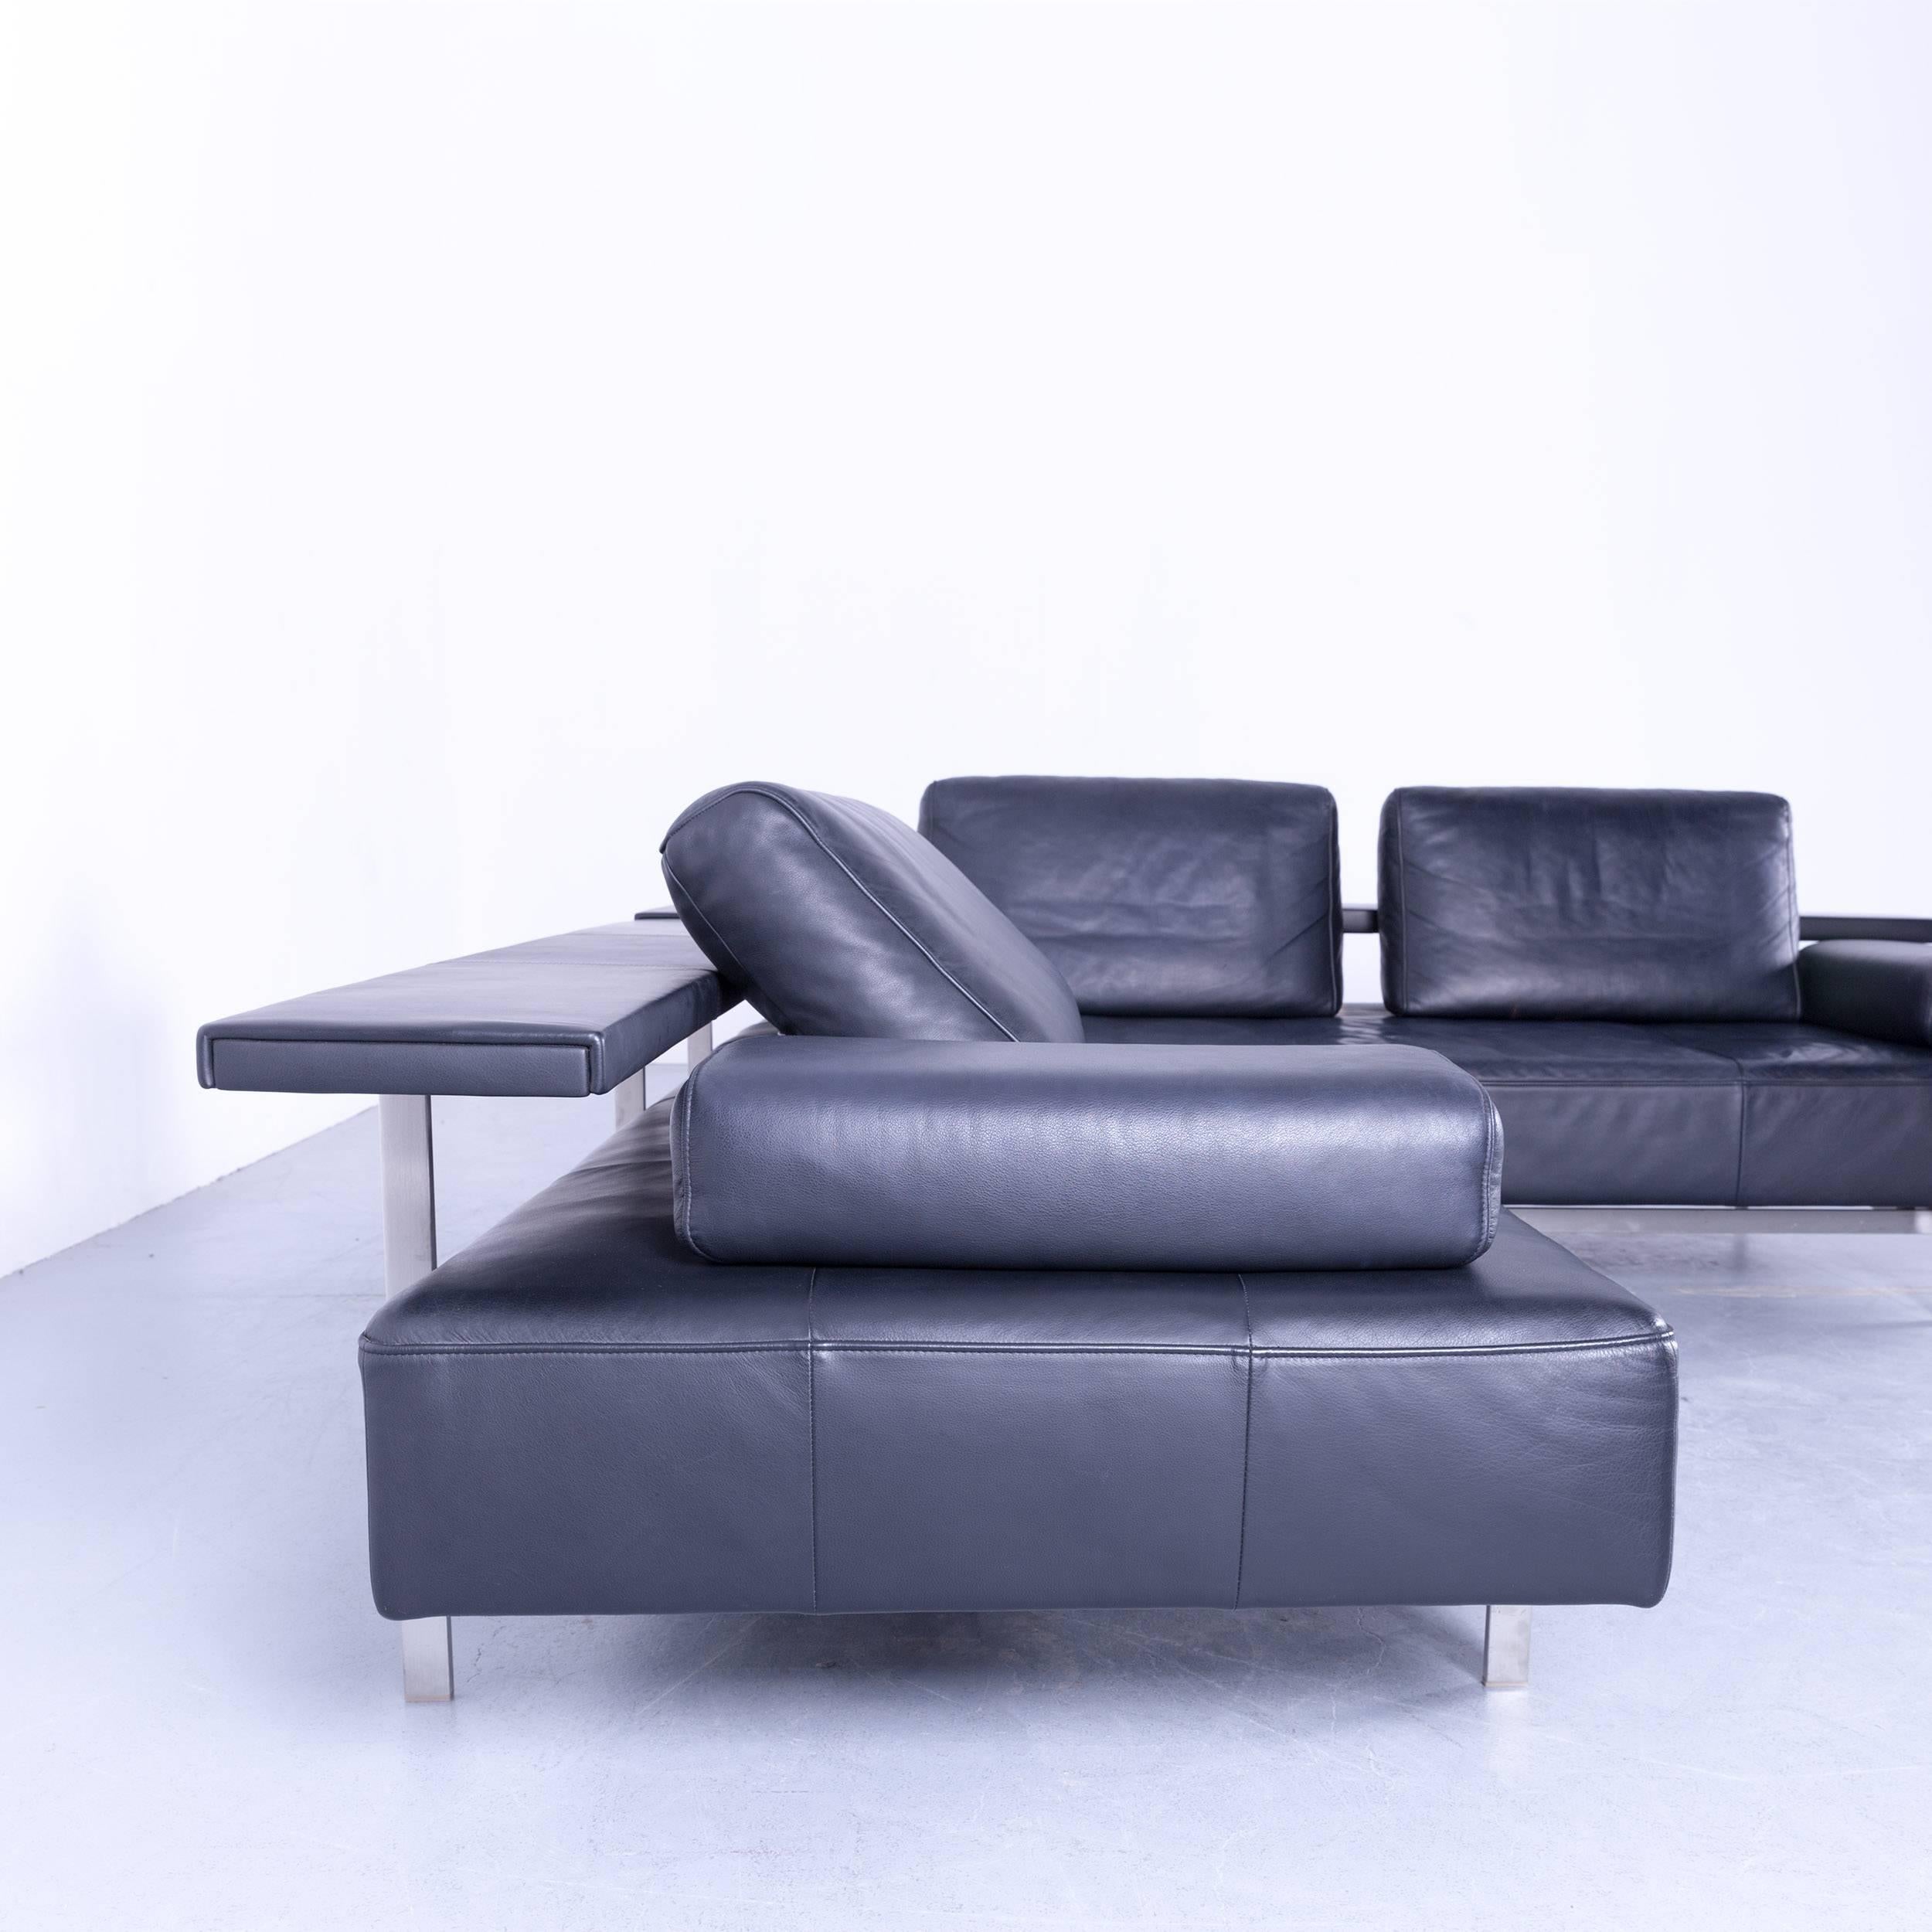 German Rolf Benz Dono Designer Corner Sofa Set Footstool Dark Blue Leather Couch Modern